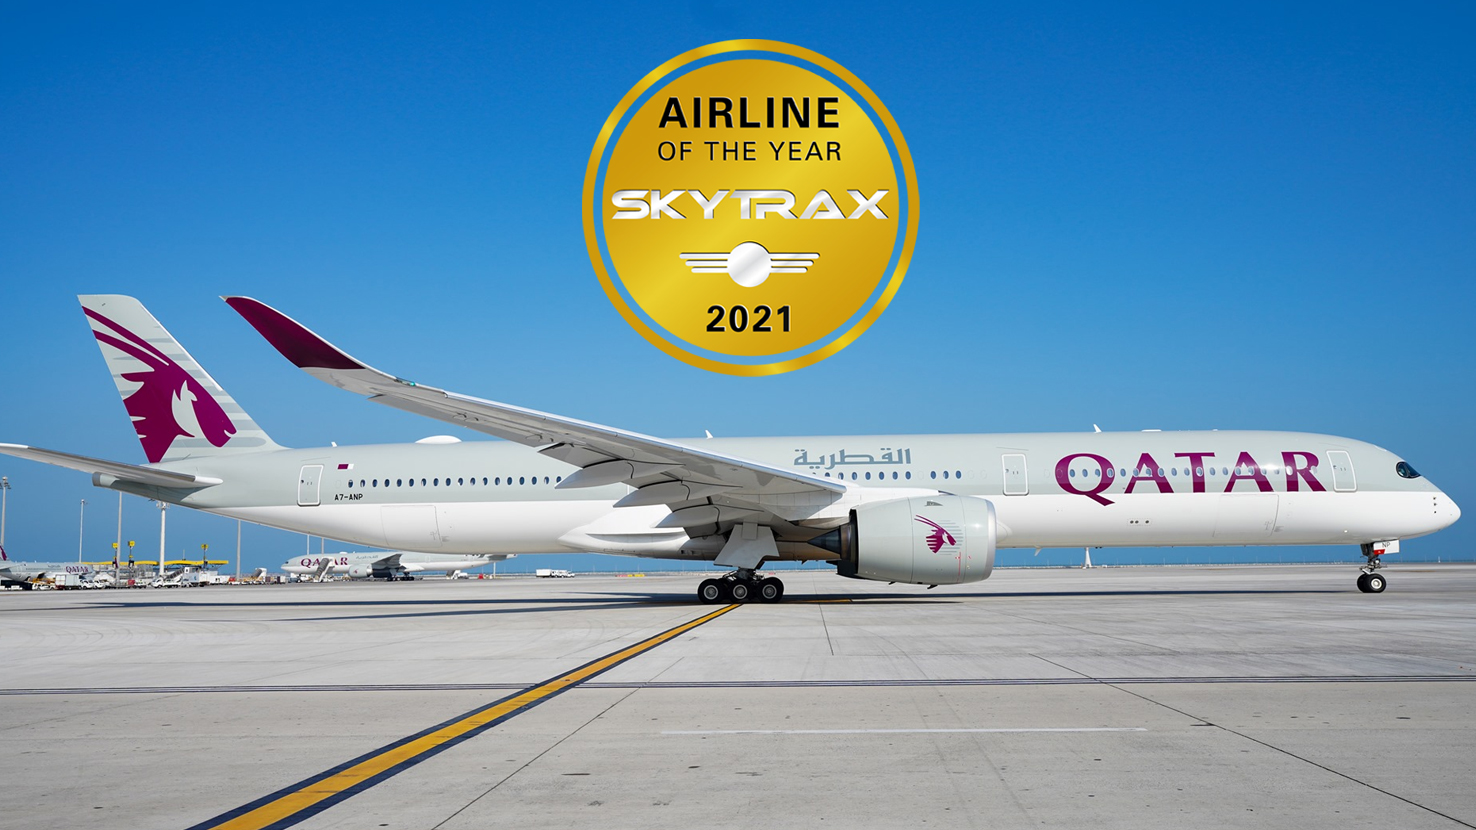 Qatar Airways is voted the World's Best Airline 2021